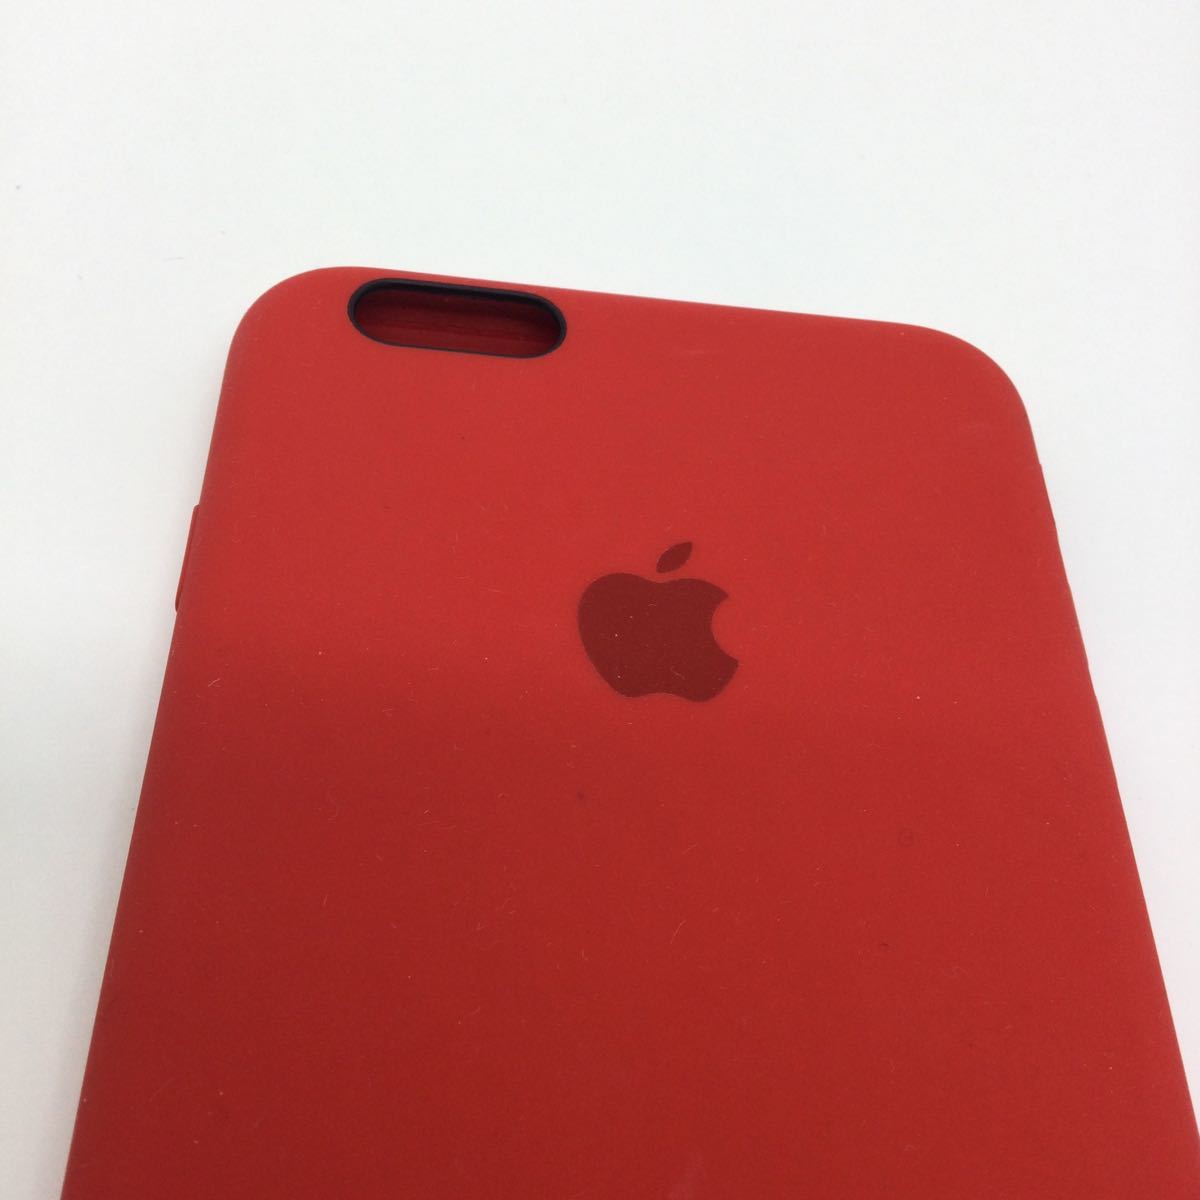  оригинальный Apple PRODUCT силиконовый чехол iPhone6s plus Pro канал красный 